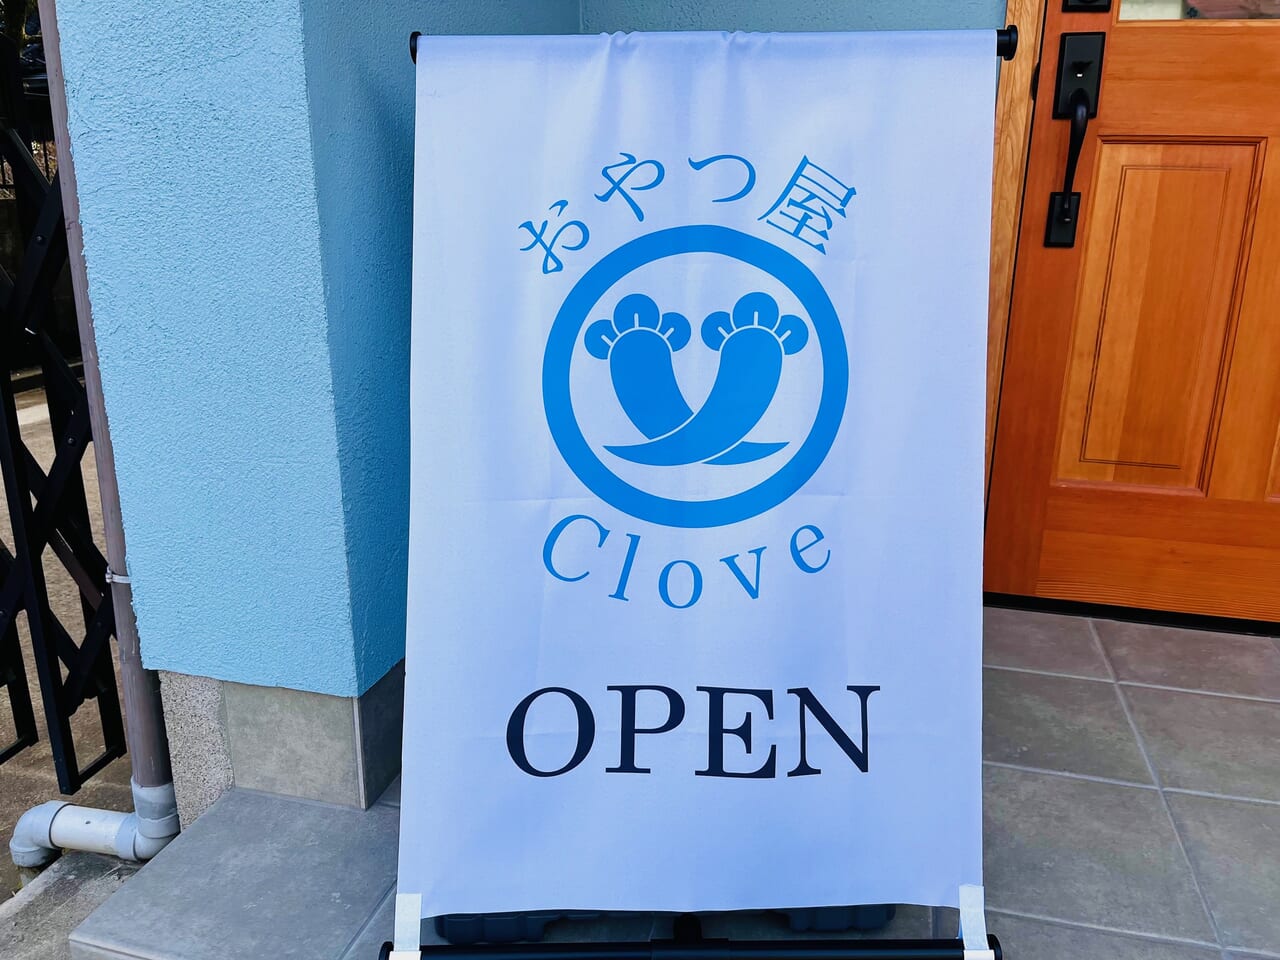 12月19日みやま市瀬高町にオープンした焼き菓子メインのお菓子屋さん「おやつ屋Clove」